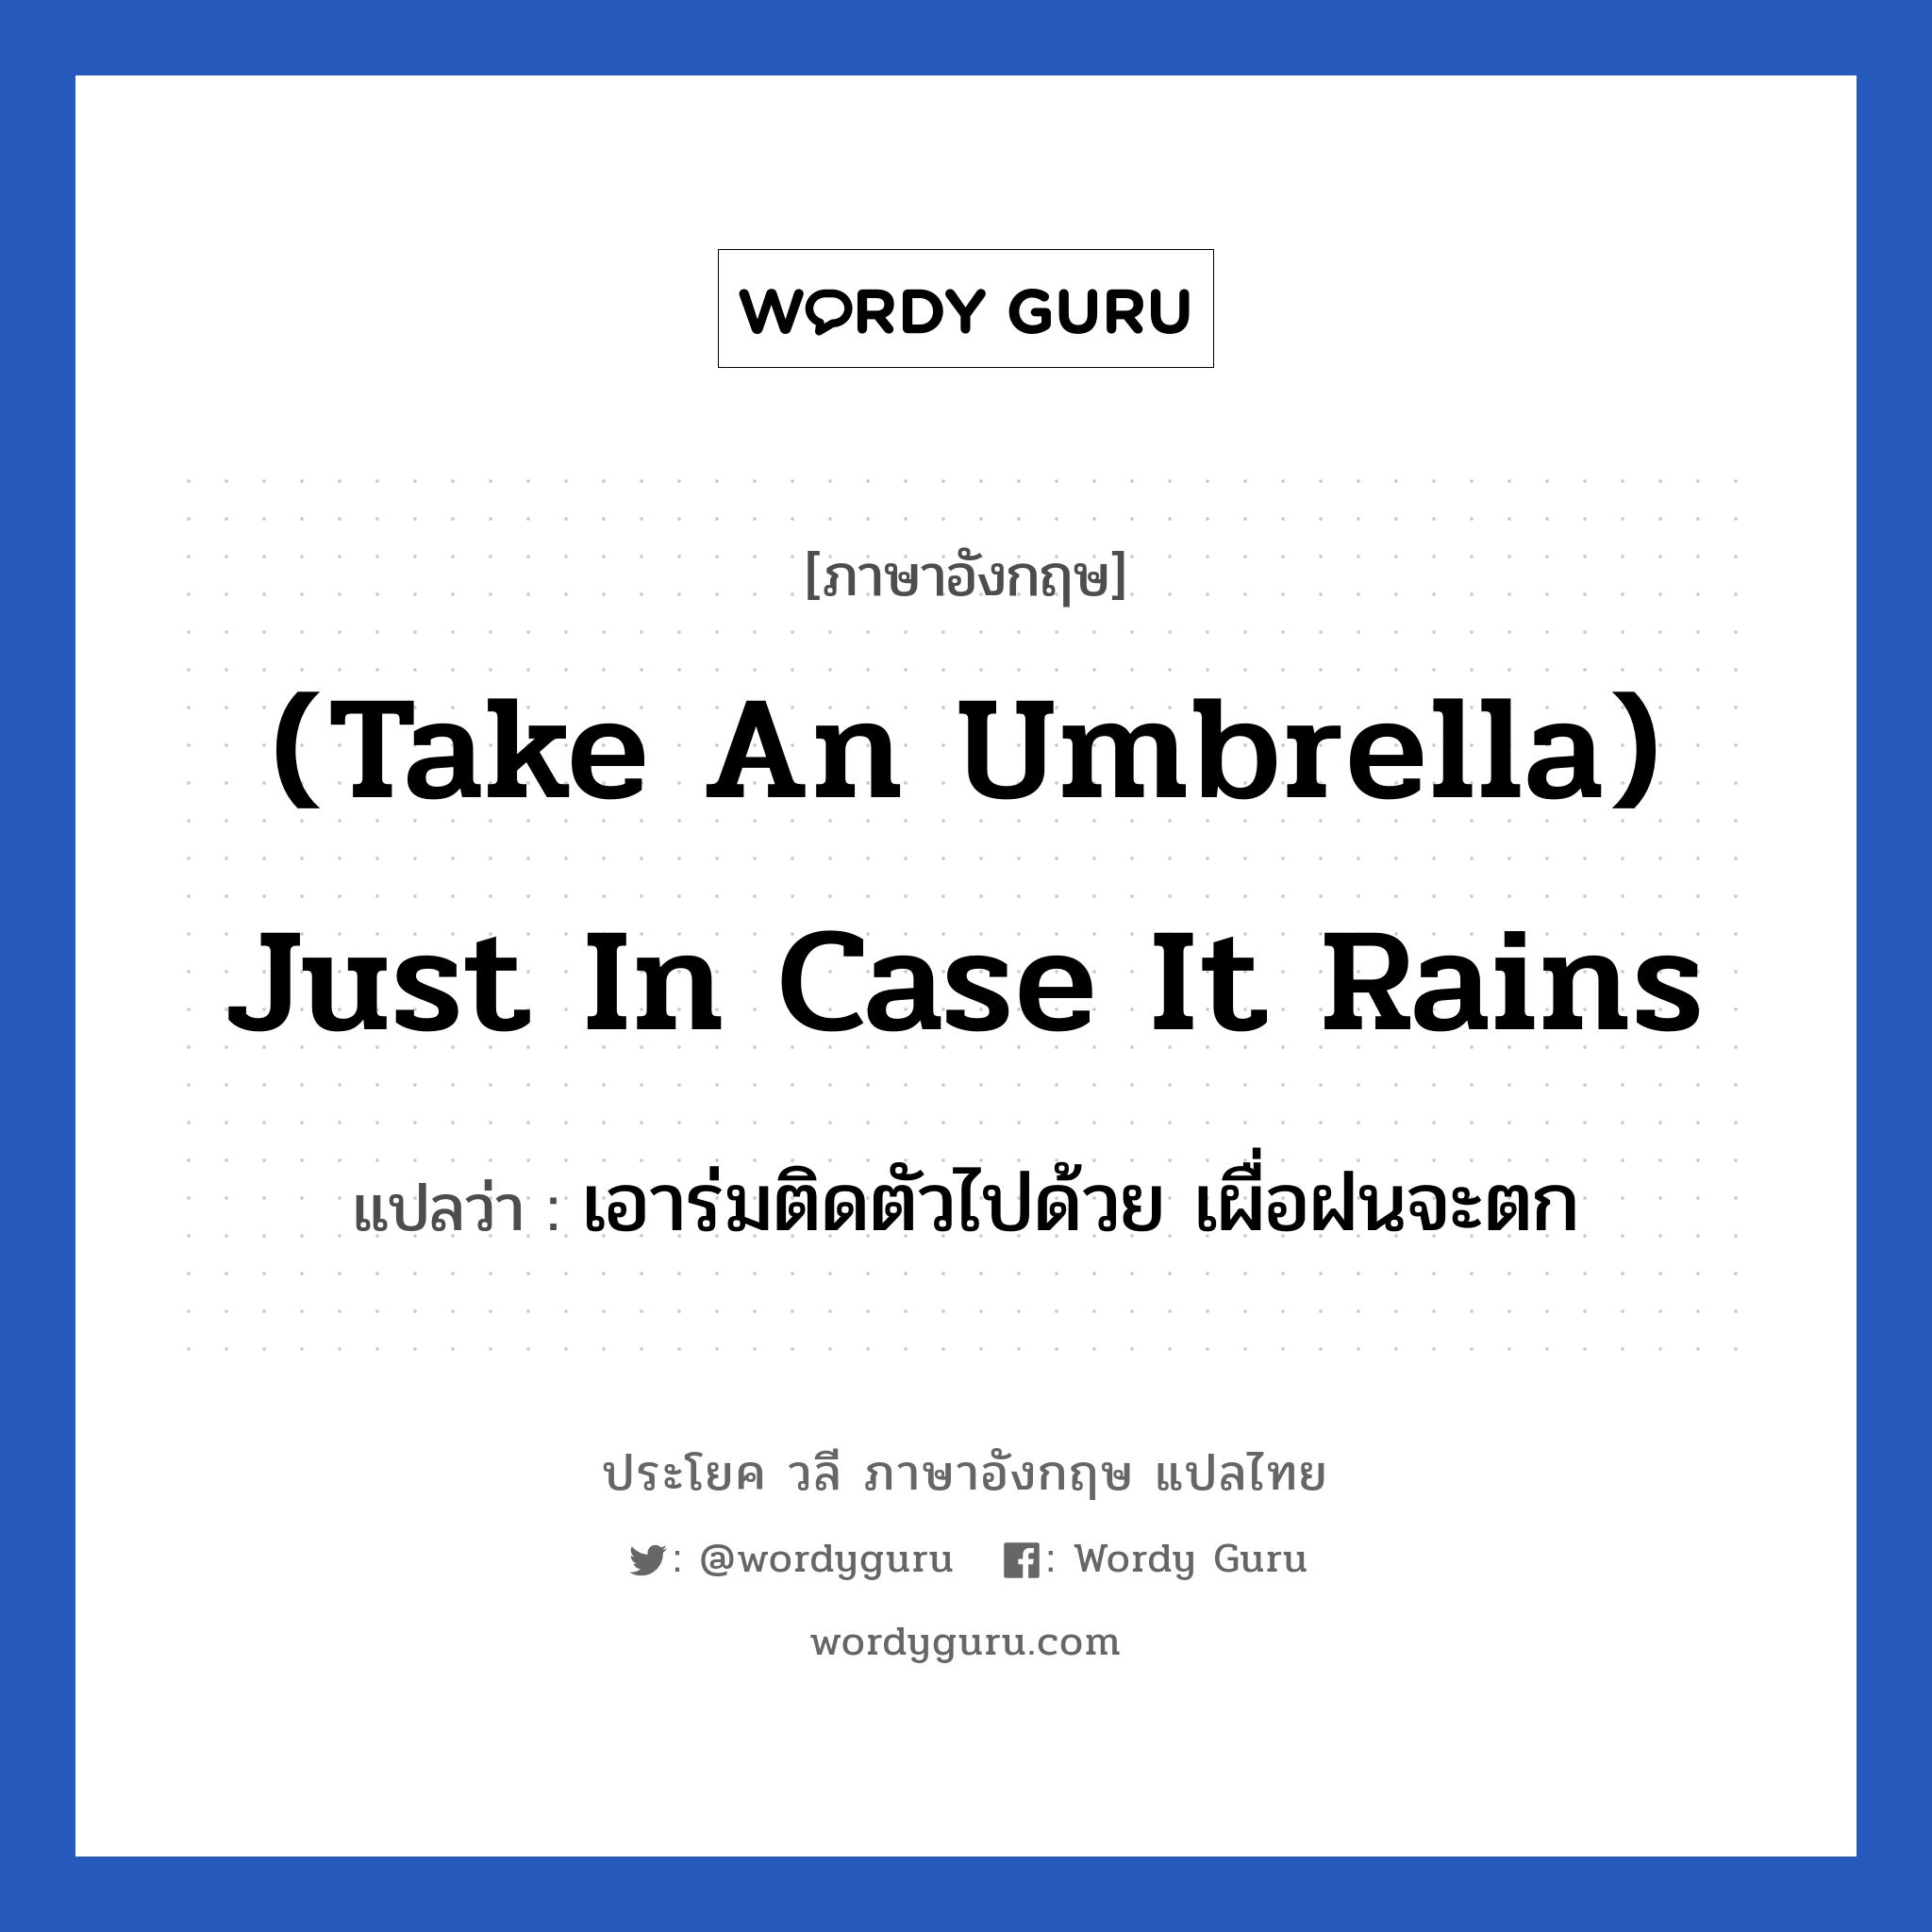 เอาร่มติดตัวไปด้วย เผื่อฝนจะตก ภาษาอังกฤษ?, วลีภาษาอังกฤษ เอาร่มติดตัวไปด้วย เผื่อฝนจะตก แปลว่า (Take an umbrella) Just in case it rains